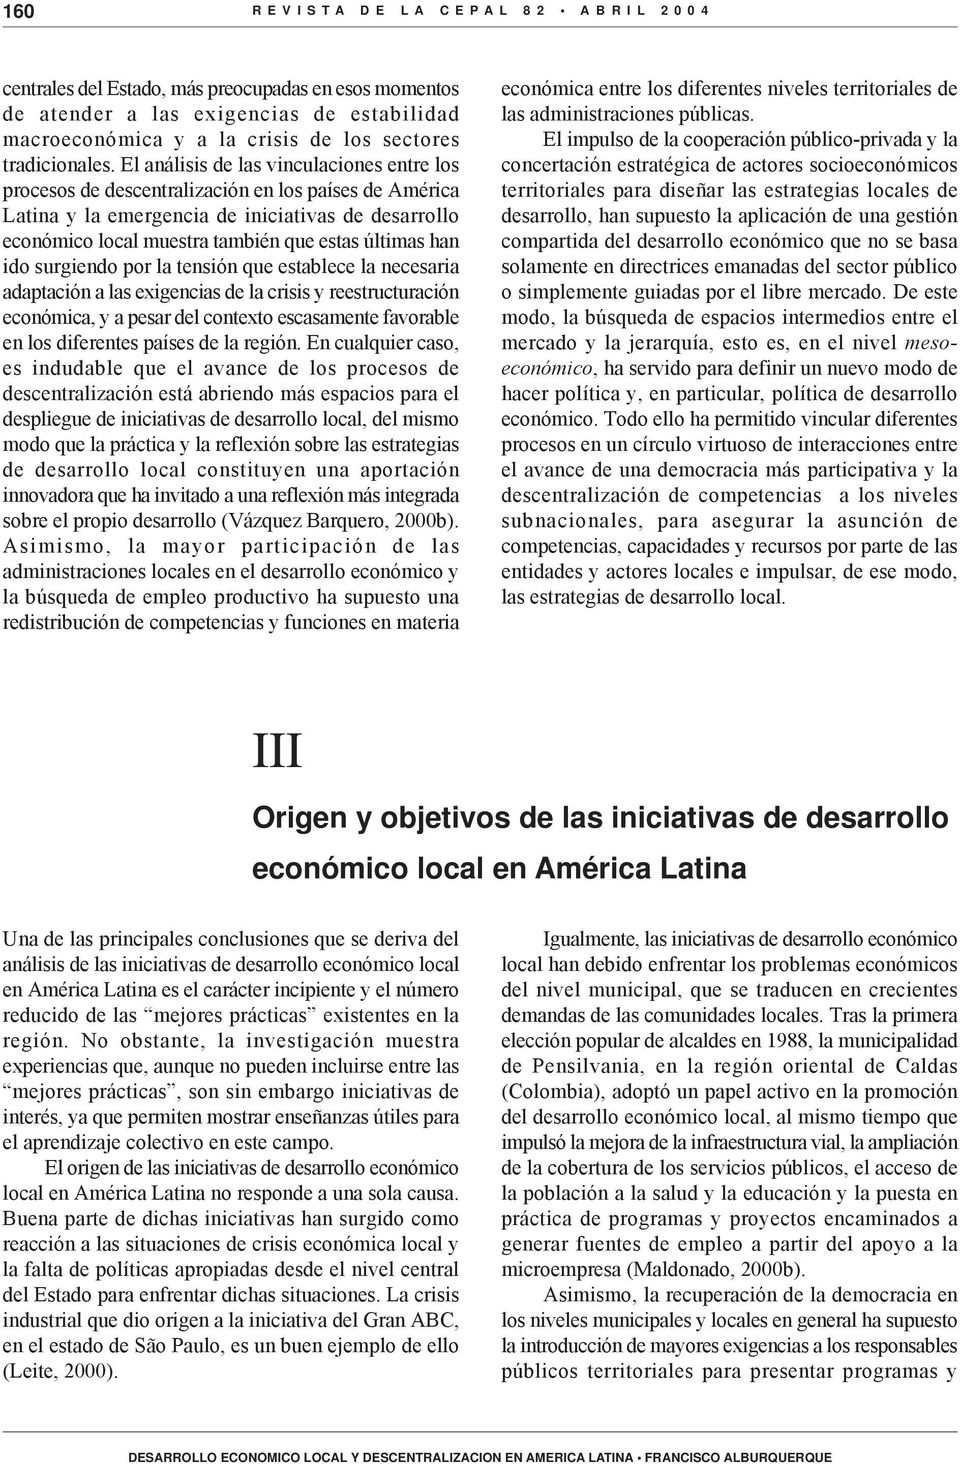 El análisis de las vinculaciones entre los procesos de descentralización en los países de América Latina y la emergencia de iniciativas de desarrollo económico local muestra también que estas últimas